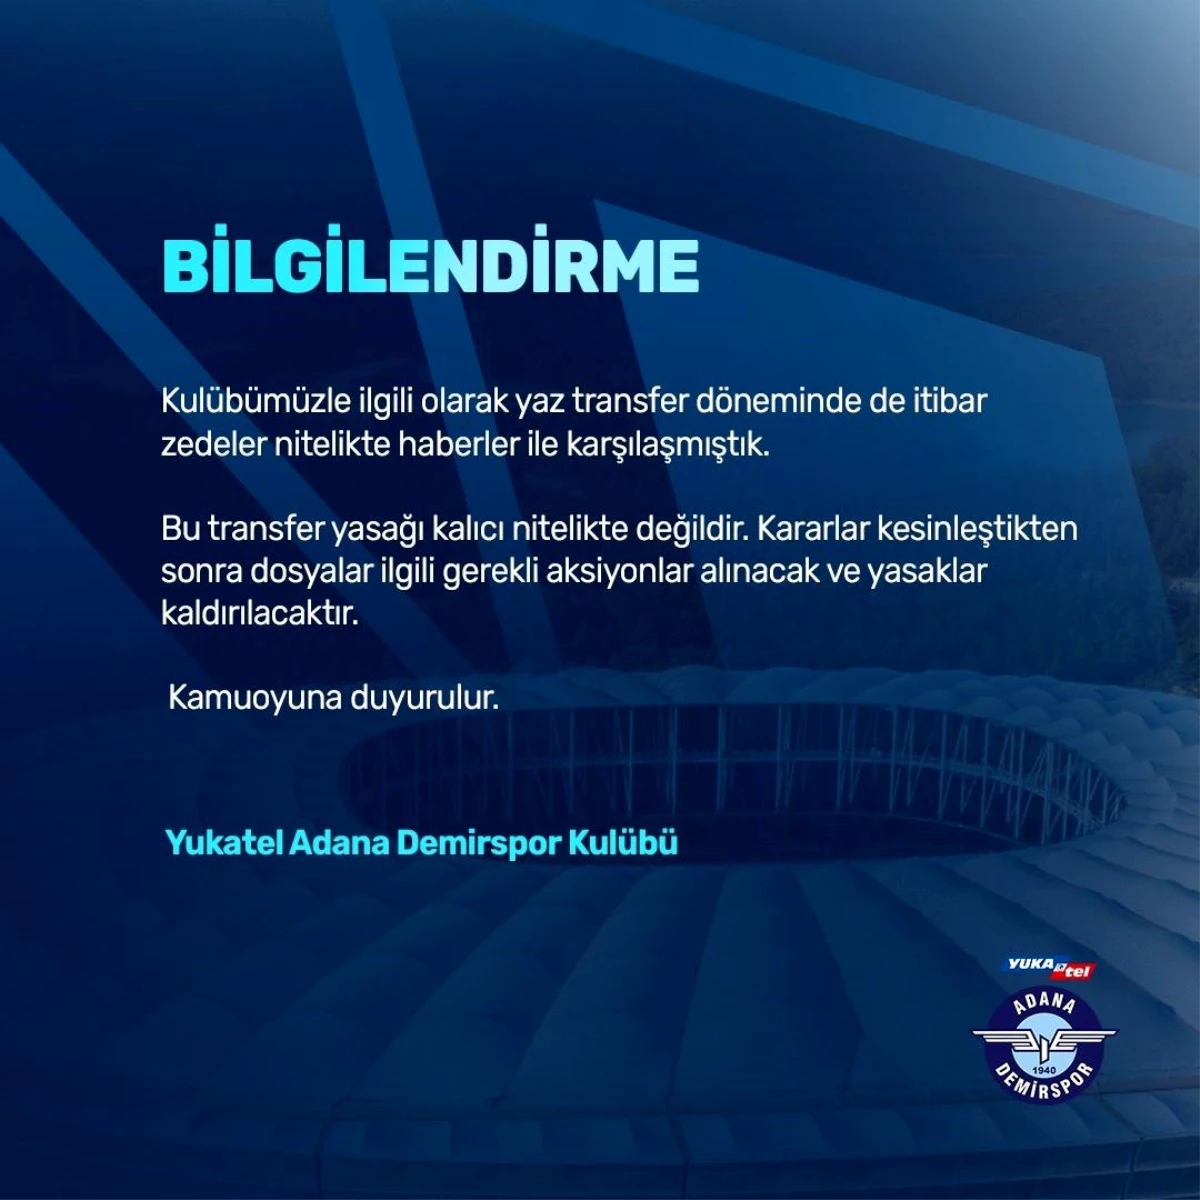 Adana Demirspor, FIFA tarafından verilen transfer yasağının kalıcı olmadığını belirtti